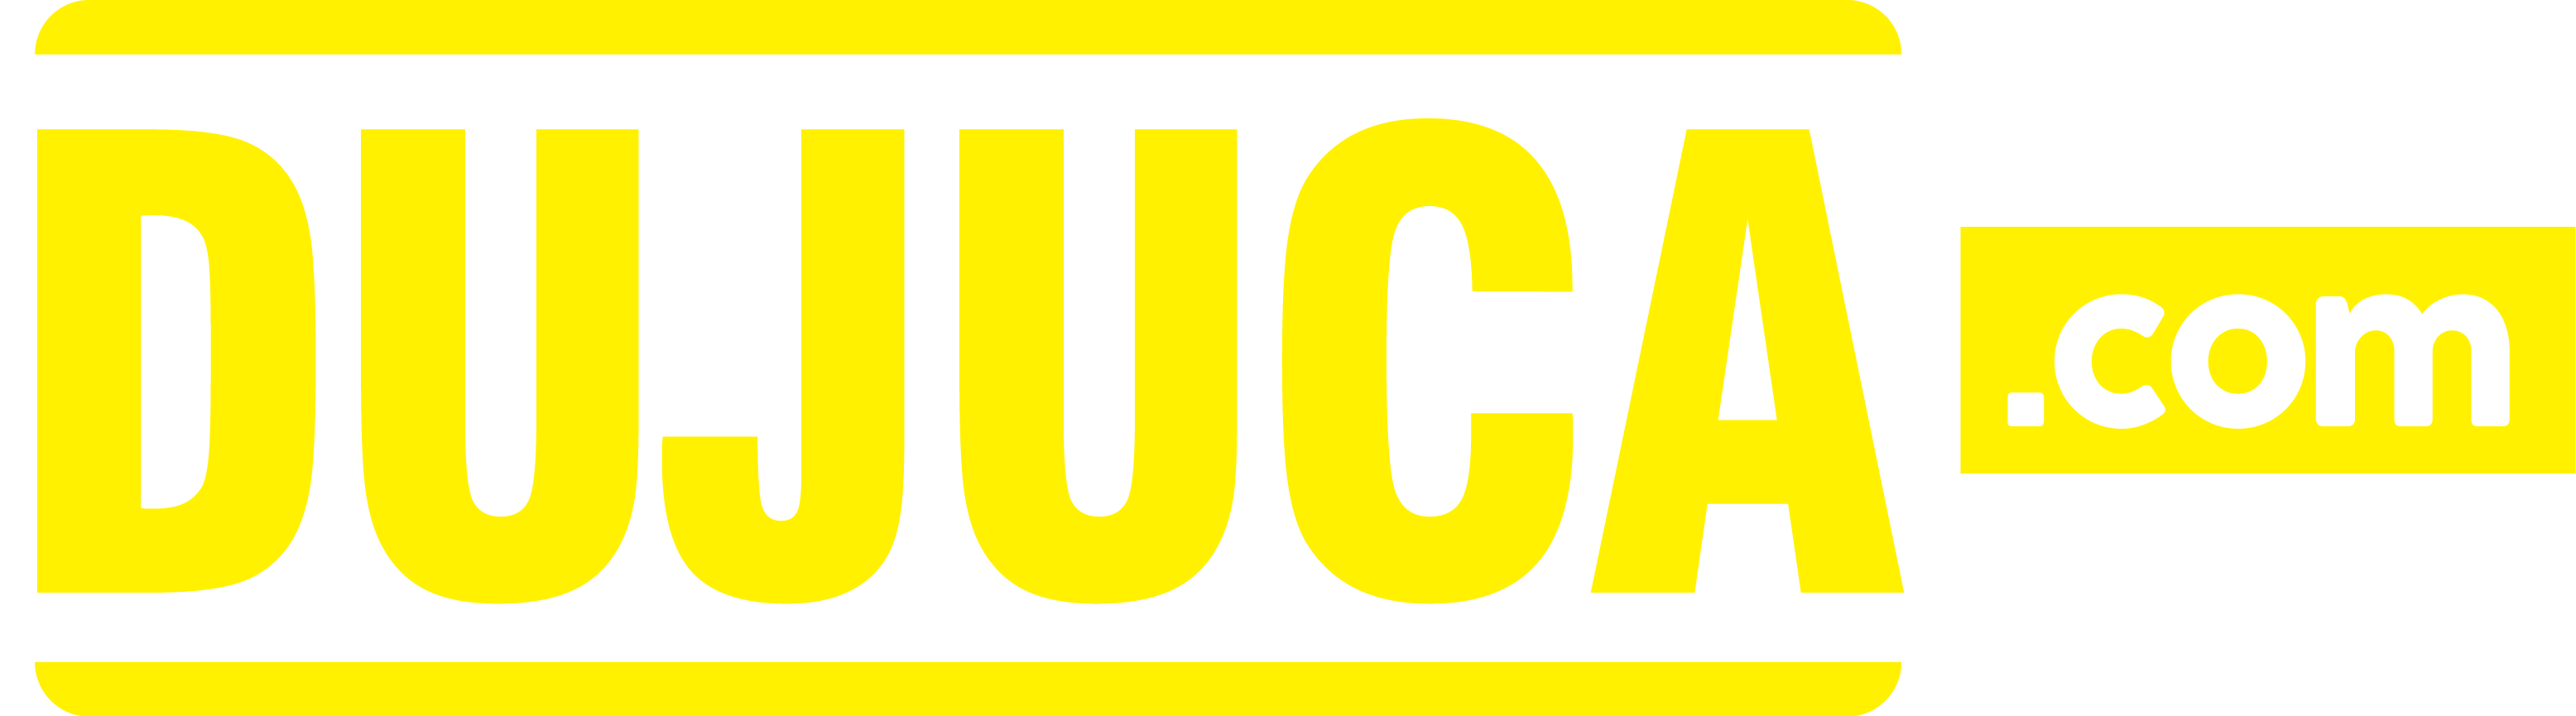 dujuca.com